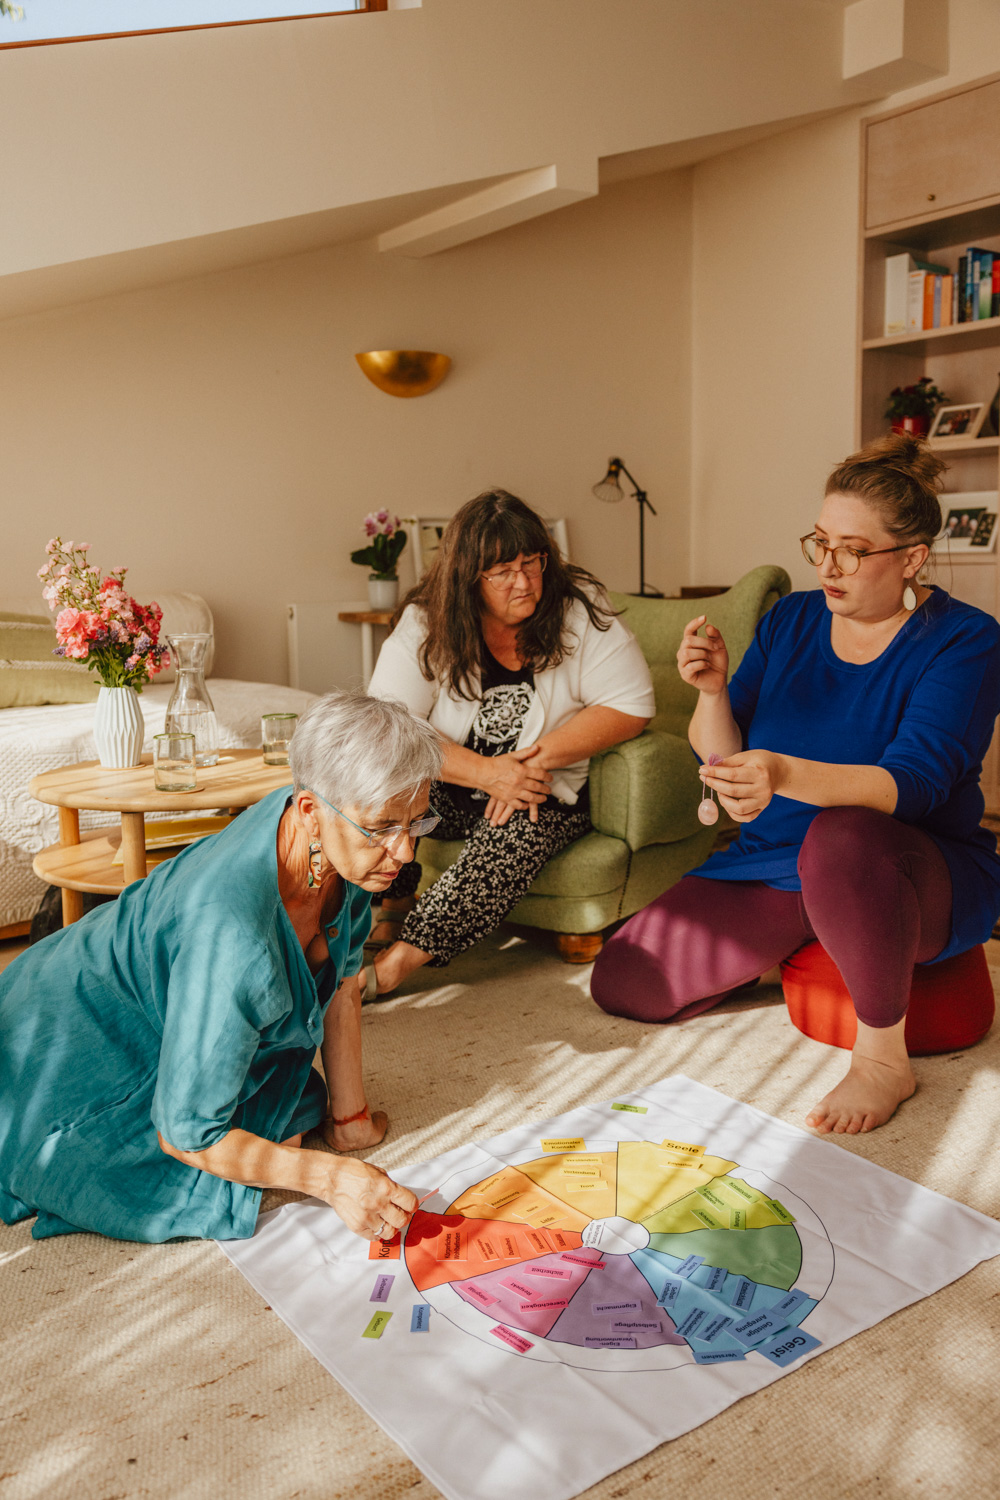 Drei Frauen sitzen und knien um ein buntes Tuch und unterhalten sich. Af dem Tuch sind verschiedene Kärtchen ausgebreitet auf denen Begriffe stehen.